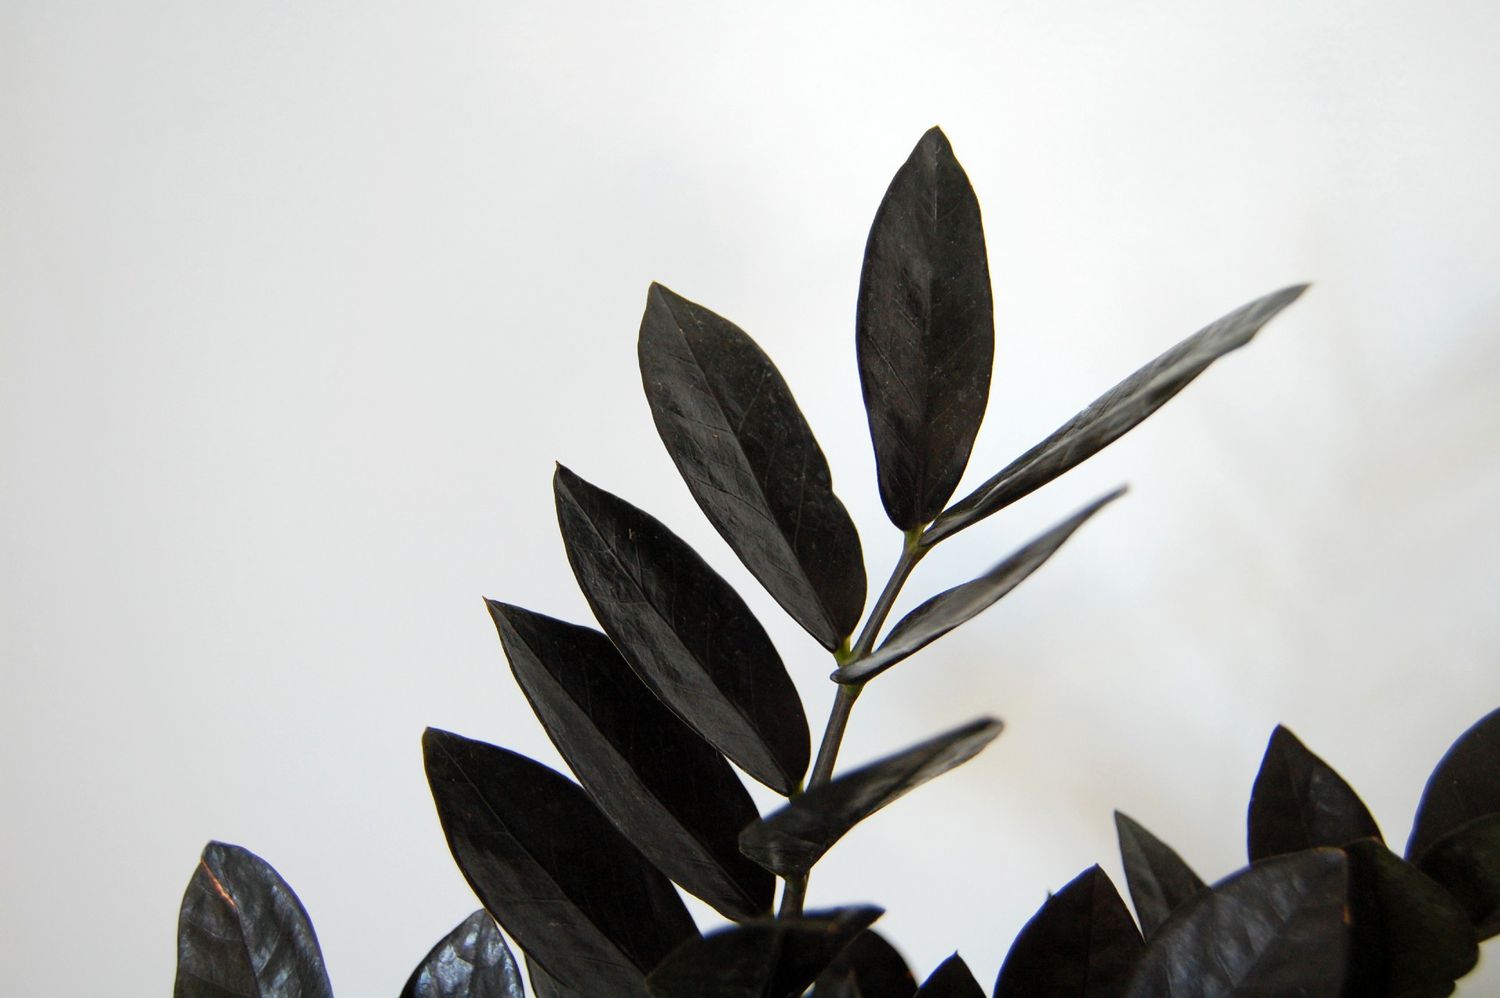 Caules e folhas da planta ZZ corvo roxo escuro contra uma parede branca.